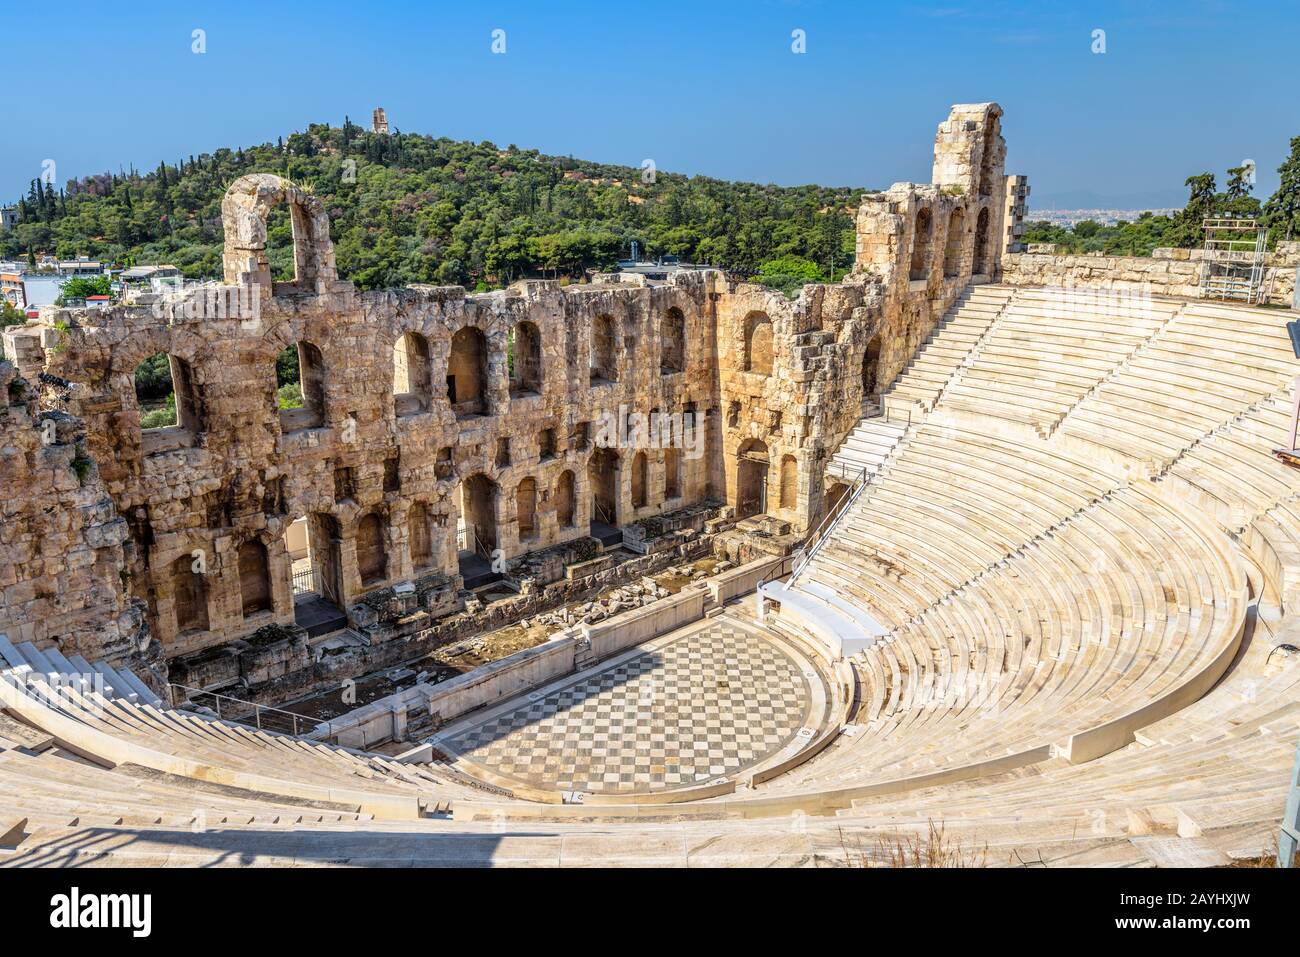 Odeon von Herodes Atticus auf der Akropolis, Athen, Griechenland. Es ist eines der wichtigsten Wahrzeichen Athens. Panorama des antiken Amphitheaters. Schöne Aussicht auf Famo Stockfoto